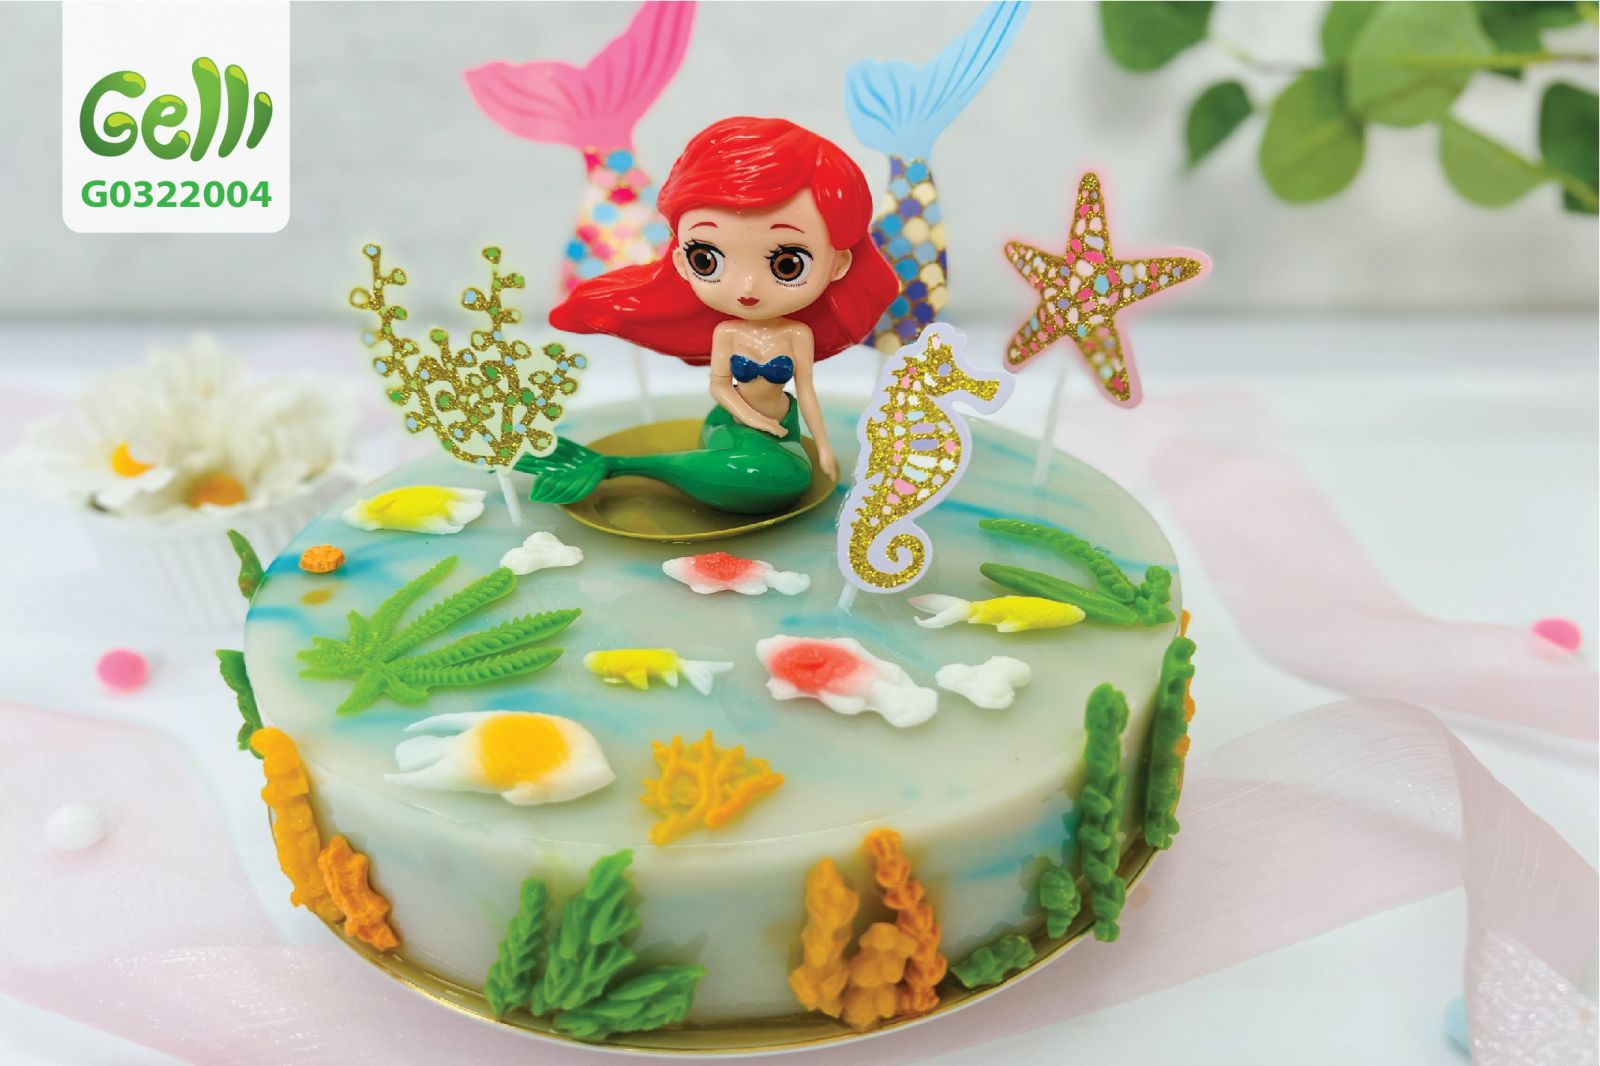 Bánh kem sinh nhật nàng tiên cá váy hồng xinh đẹp nơi đại dương xanh  Bánh  Thiên Thần  Chuyên nhận đặt bánh sinh nhật theo mẫu